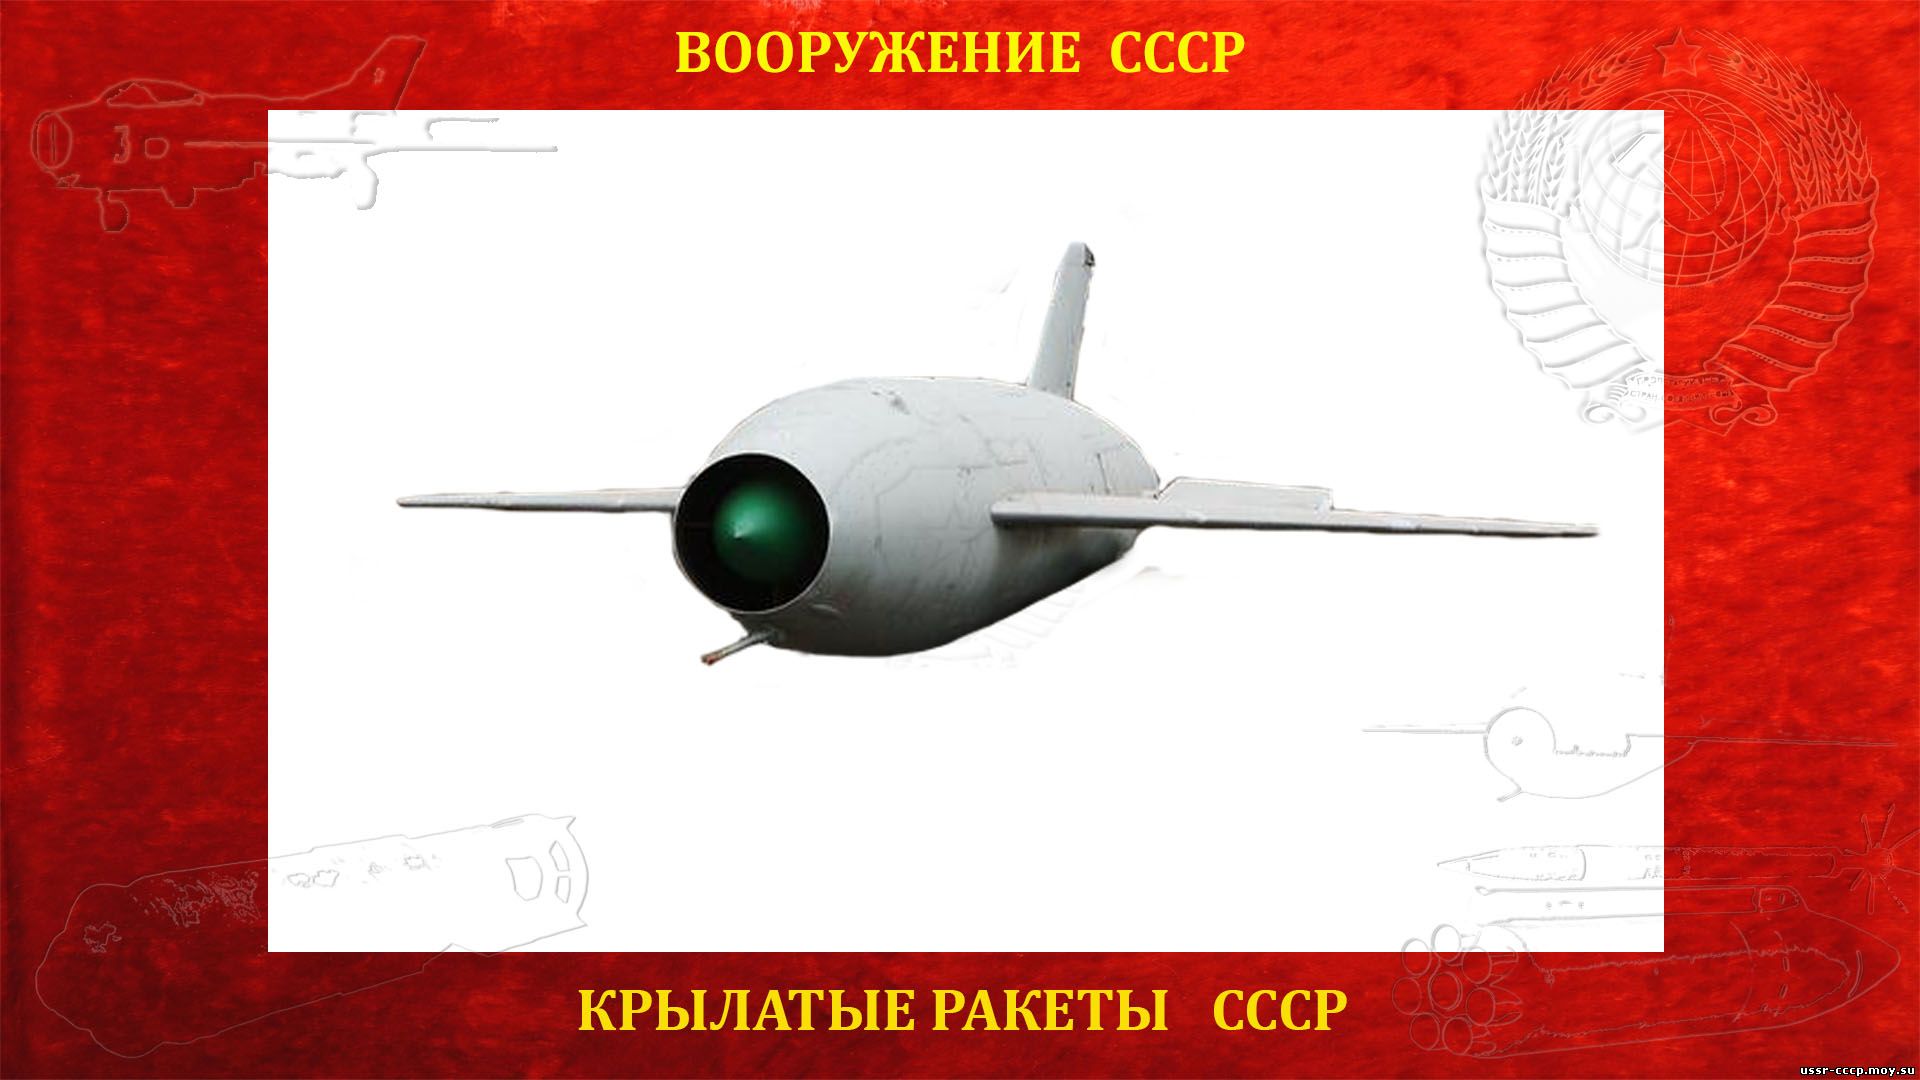 Х-20 (по кодификации МО США и НАТО — AS-3 Kangaroo (Кенгуру)) — Советская сверхзвуковая крылатая ракета большой дальности воздушного базирования ракетного комплекса К-20 («Комета-20») — Первая крылатая ракета СССР (Полное повествование)